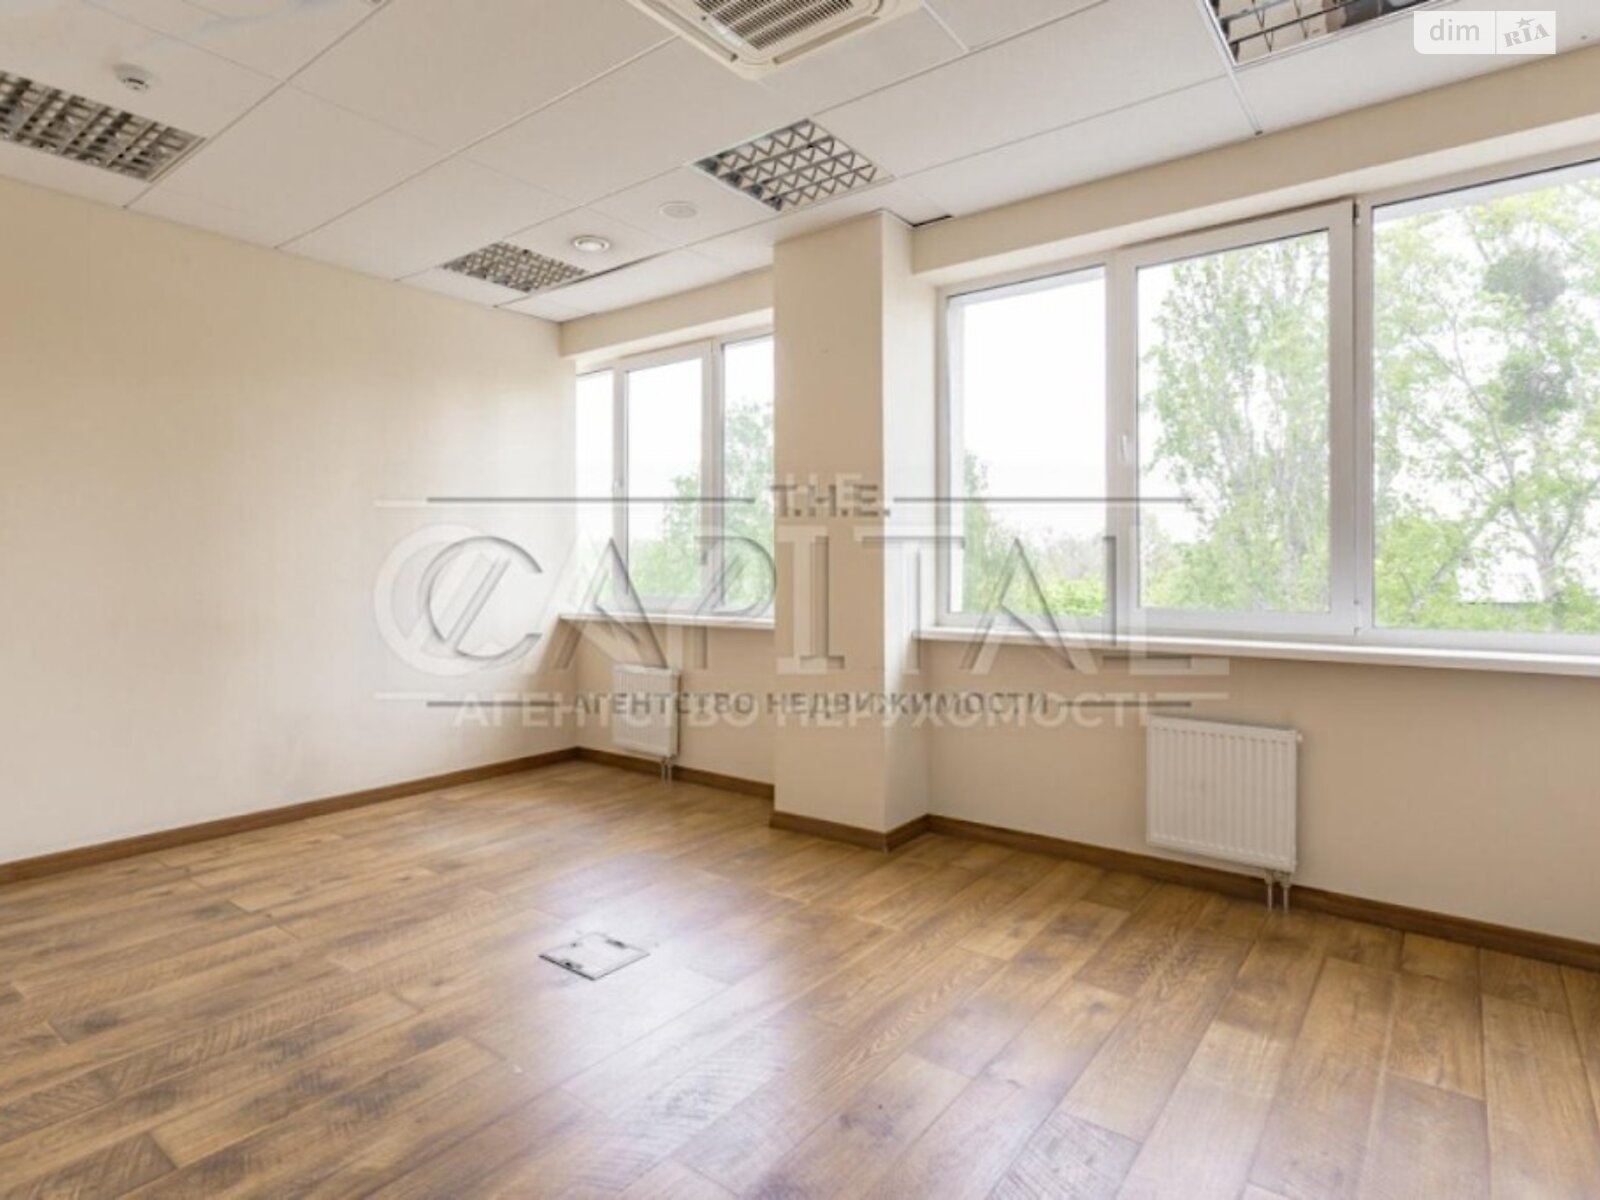 Аренда офисного помещения в Киеве, Плещеева улица 10, помещений - 14, этаж - 6 фото 1